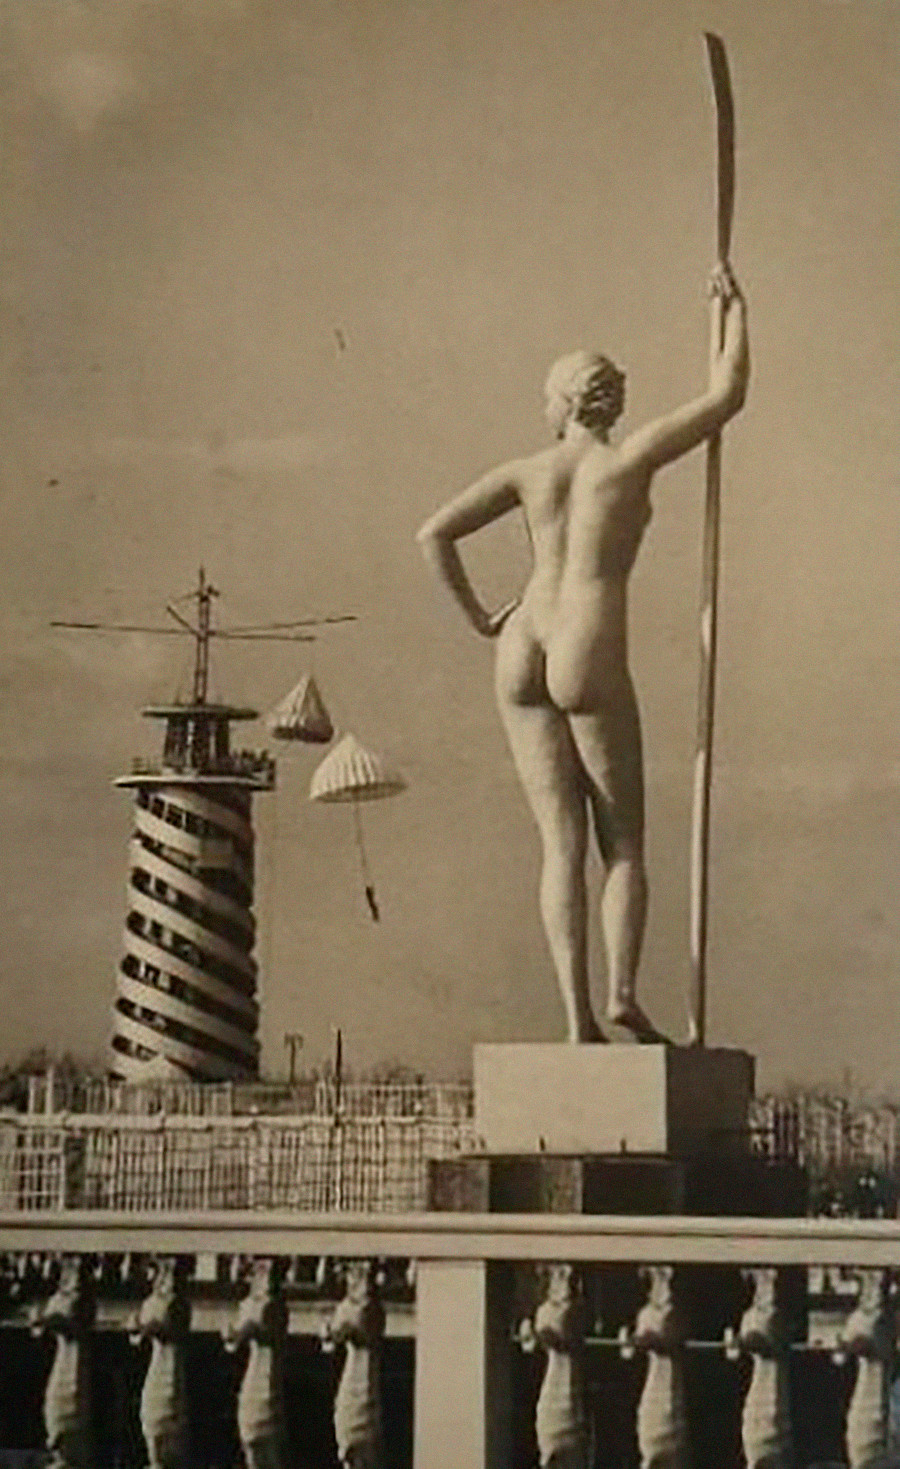 «Jeune fille à la rame». Cette sculpture précise était un modèle très répandu dans les parcs et lieux de villégiature d’URSS.
